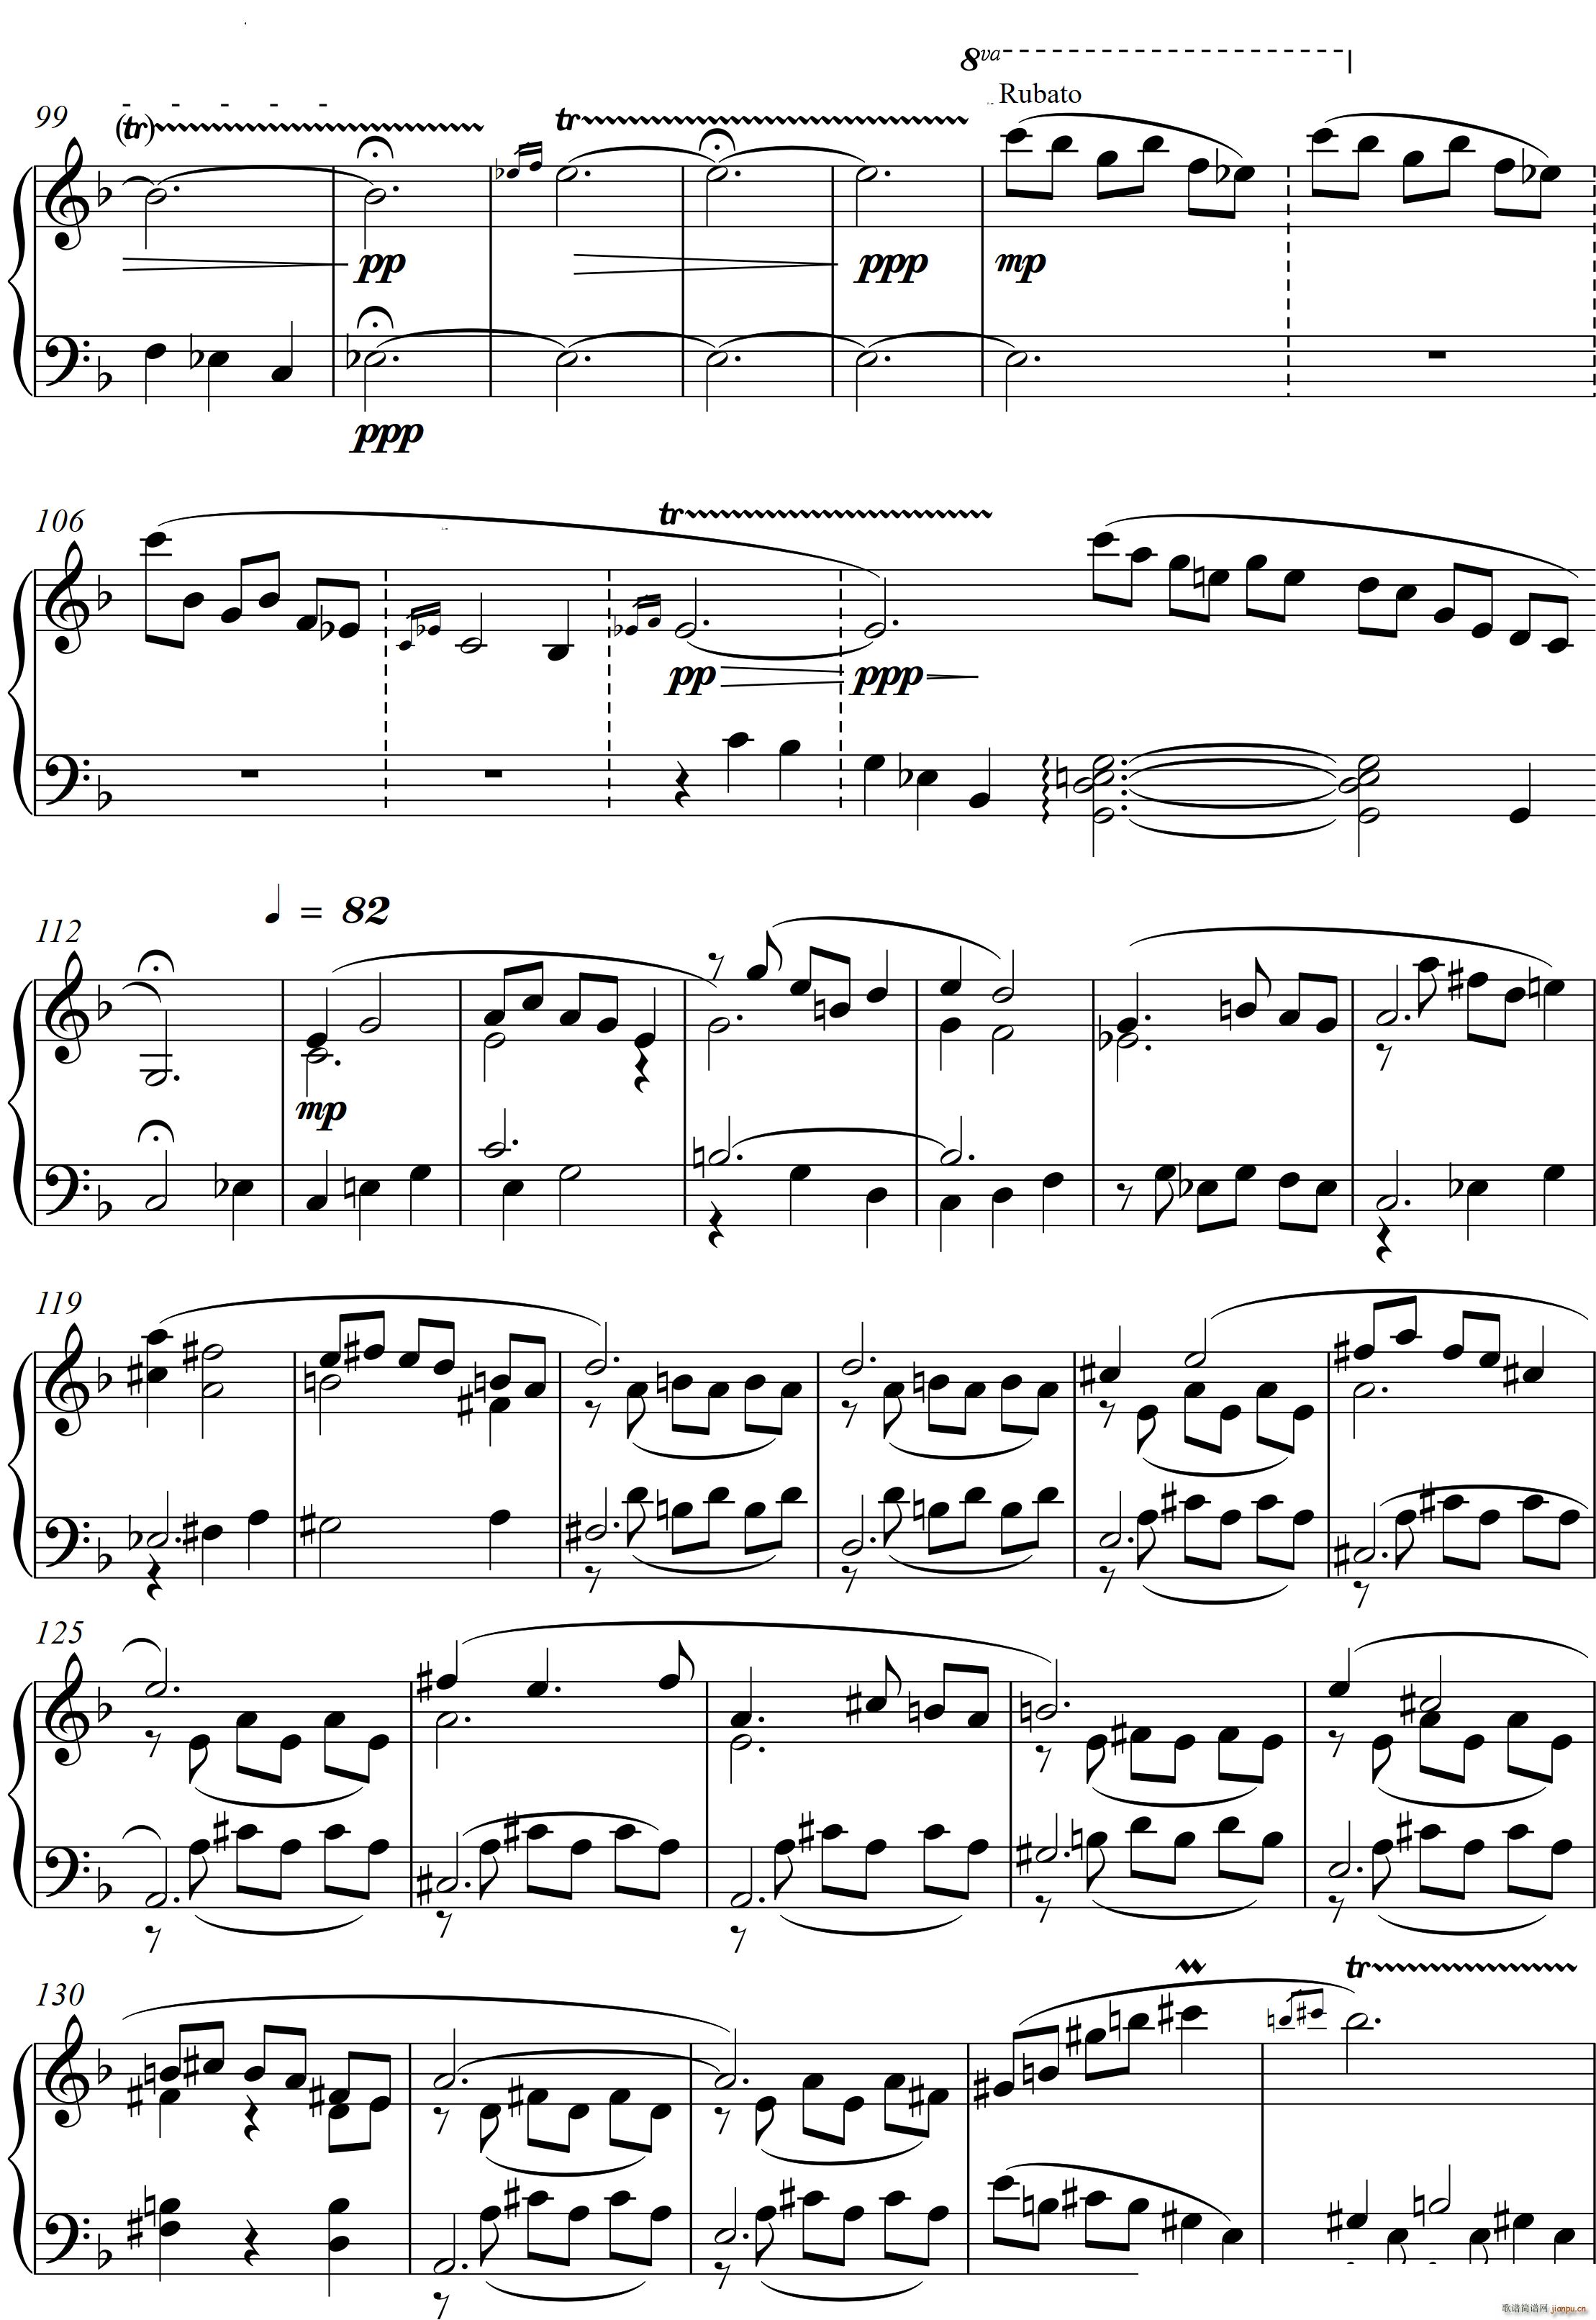 第23钢琴奏鸣曲 高甲缘 Piano Sonata No 23三个乐章(钢琴谱)17